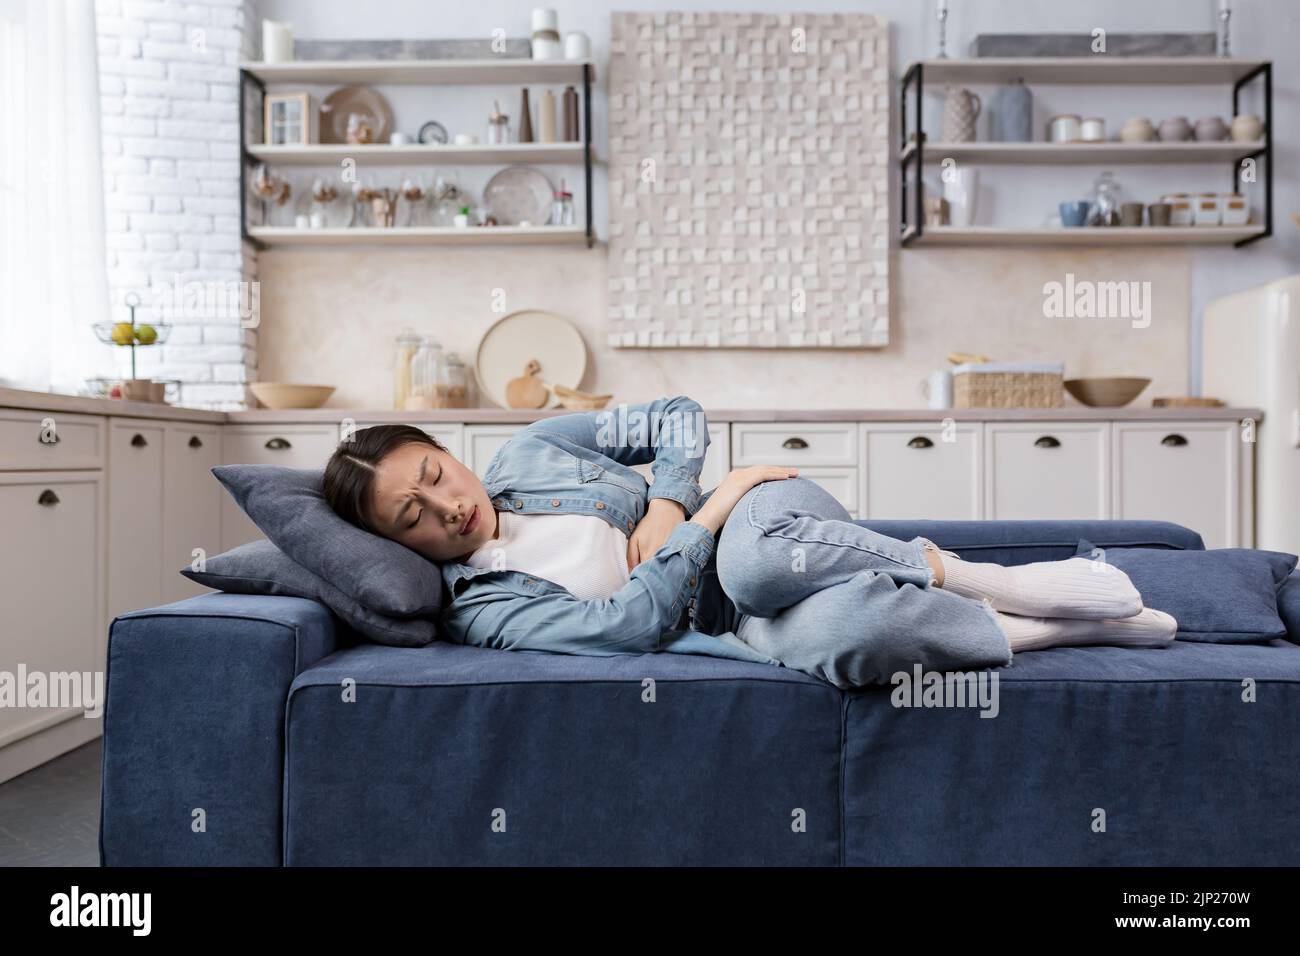 Kranke und traurige Frau, die zu Hause im Wohnzimmer auf dem Sofa liegt, hat eine asiatische Frau starke Magenschmerzen und hält ihre Seite mit den Händen fest Stockfoto